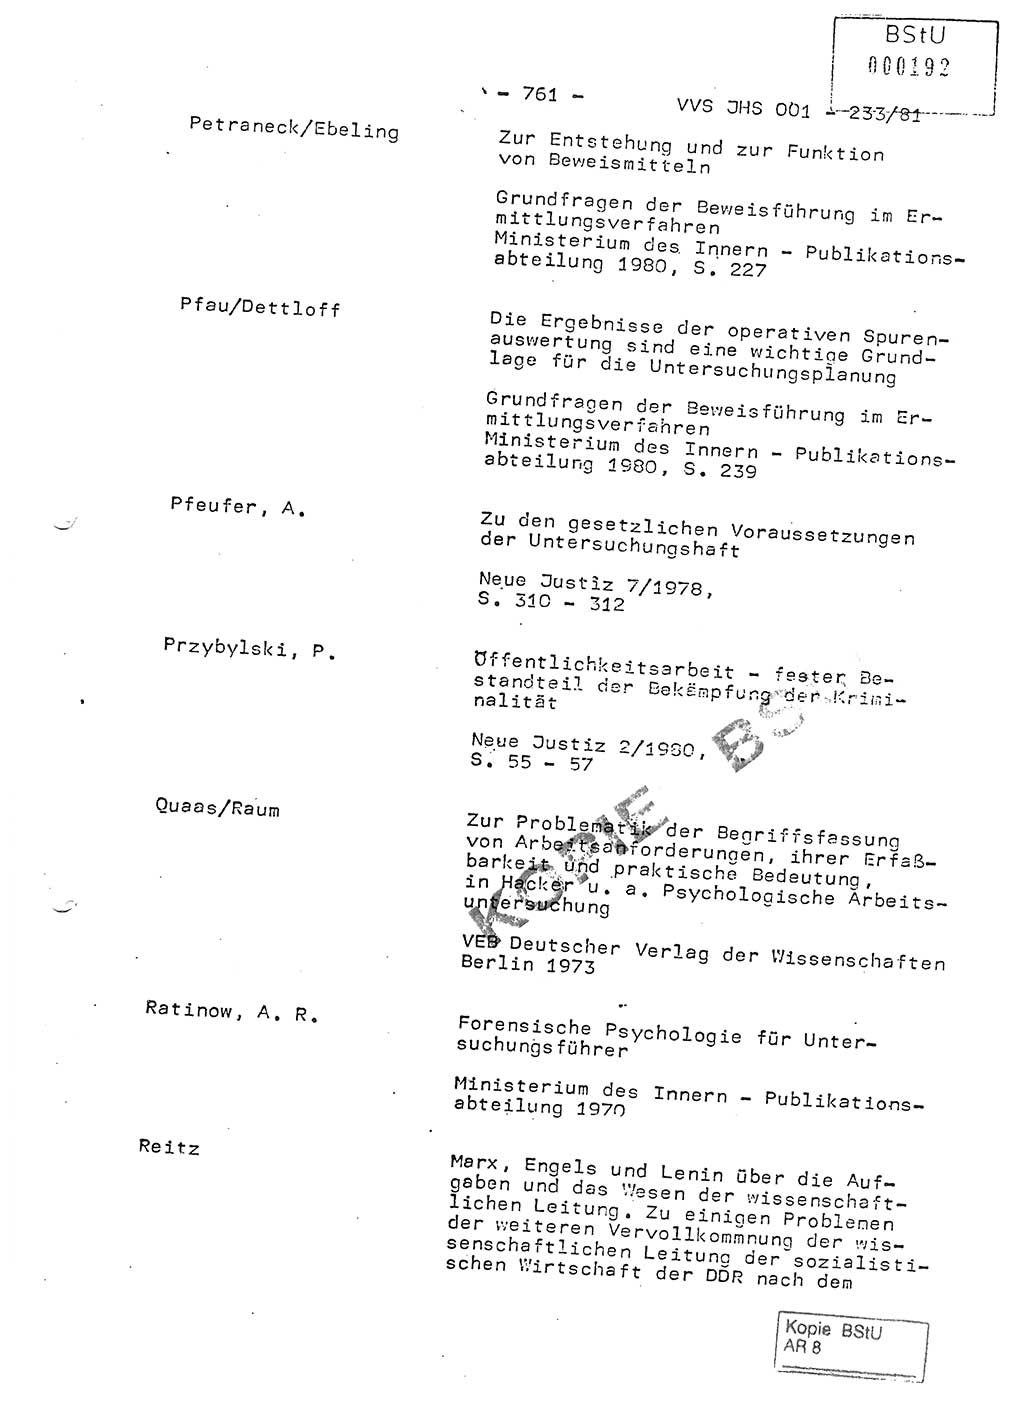 Dissertation Oberstleutnant Horst Zank (JHS), Oberstleutnant Dr. Karl-Heinz Knoblauch (JHS), Oberstleutnant Gustav-Adolf Kowalewski (HA Ⅸ), Oberstleutnant Wolfgang Plötner (HA Ⅸ), Ministerium für Staatssicherheit (MfS) [Deutsche Demokratische Republik (DDR)], Juristische Hochschule (JHS), Vertrauliche Verschlußsache (VVS) o001-233/81, Potsdam 1981, Blatt 761 (Diss. MfS DDR JHS VVS o001-233/81 1981, Bl. 761)